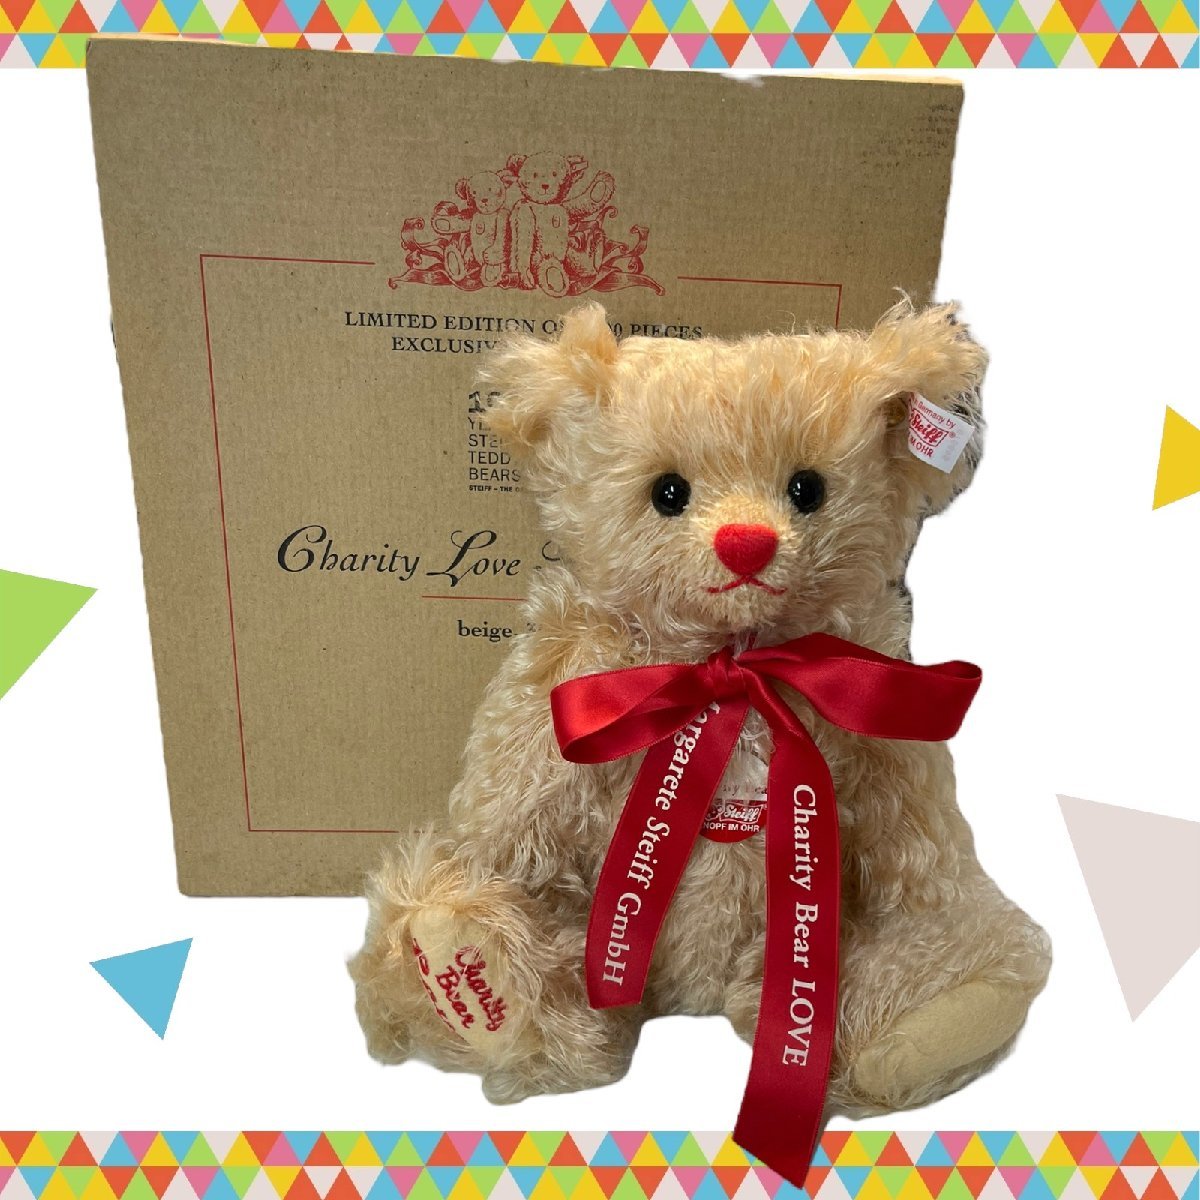 【中古品】 シュタイフ Charity Love Teddy Bear チャリティ・ラブ・テディベア ぬいぐるみ 赤リボン くま 箱有 J48342RB